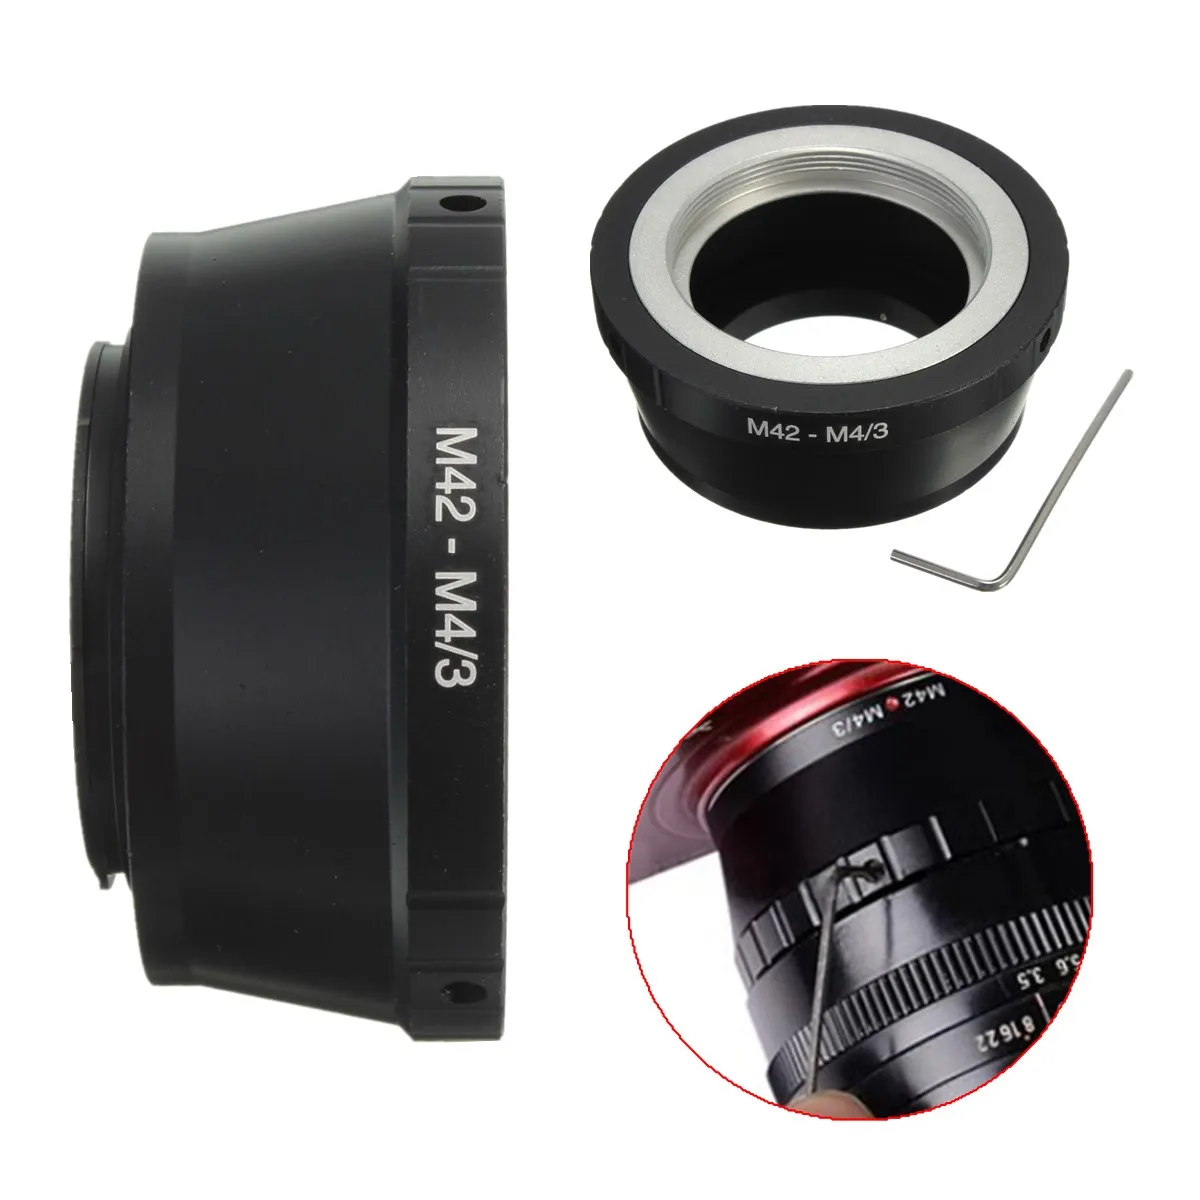 M42 42 мм кольцо-адаптер для крепления на объектив камеры Micro M4/3 M43 G1 GH1 GF1 G2 G3 OM EP-2 EPL1 гладкая поверхность черный анодированный алюминий металл